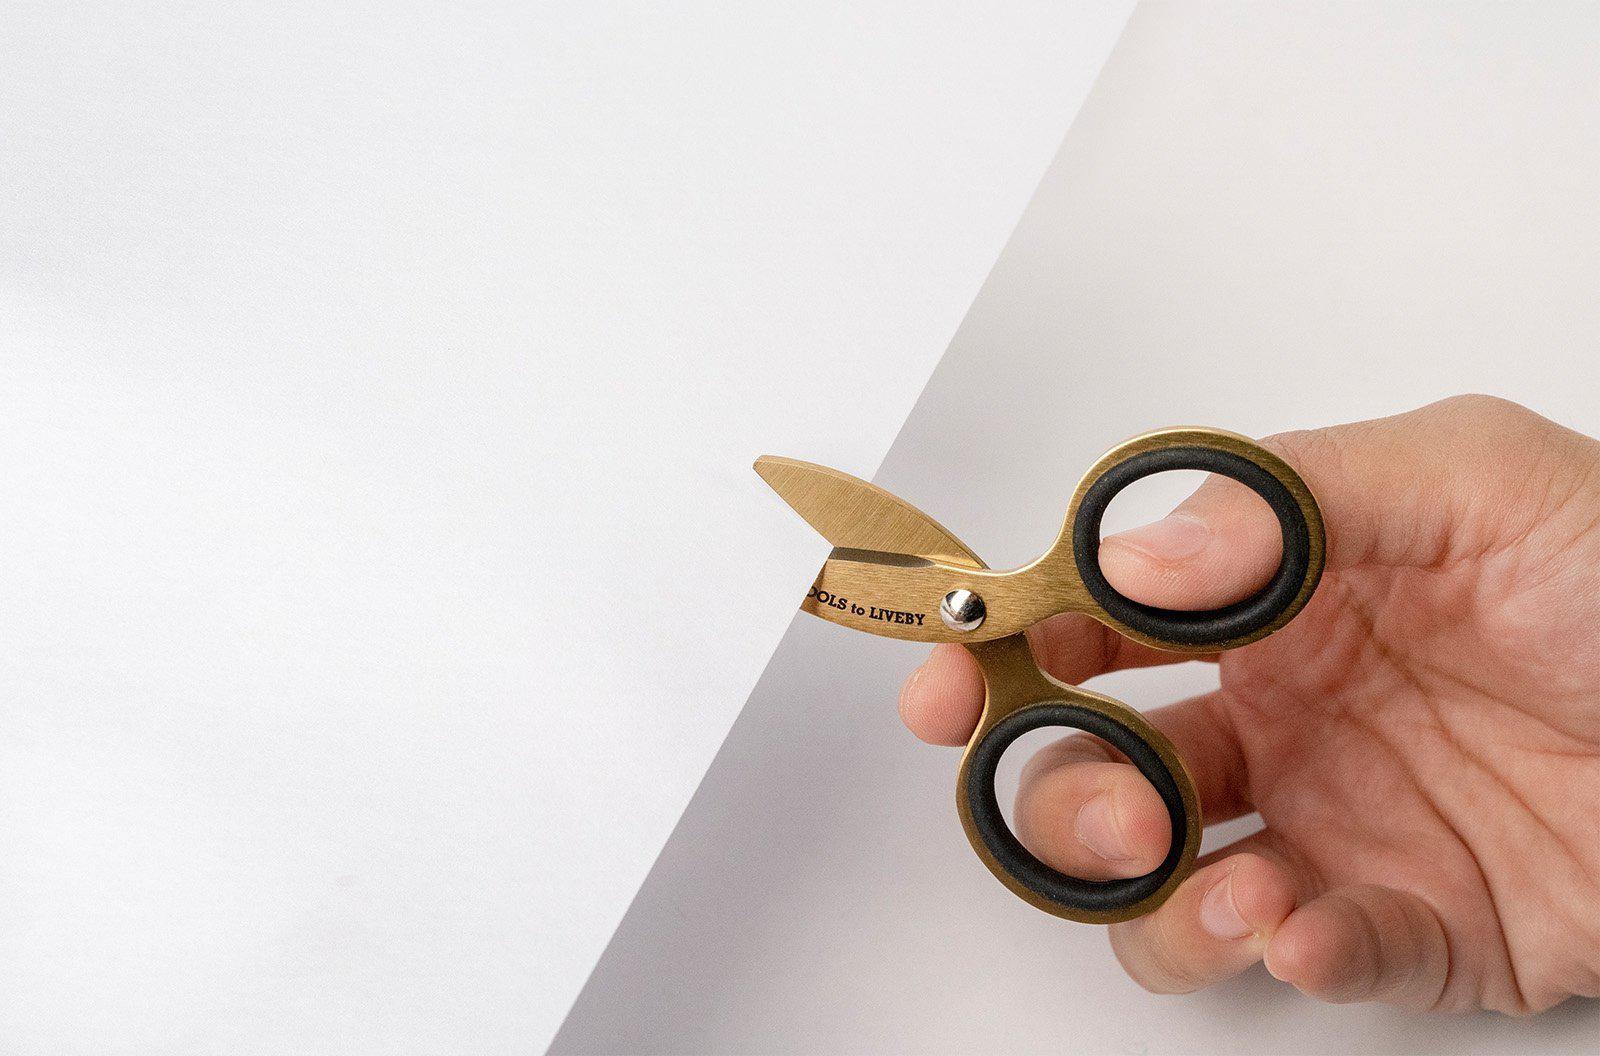 Sew Sweet Handy Cut Multi-Purpose Mini Scissors - Sew Much More